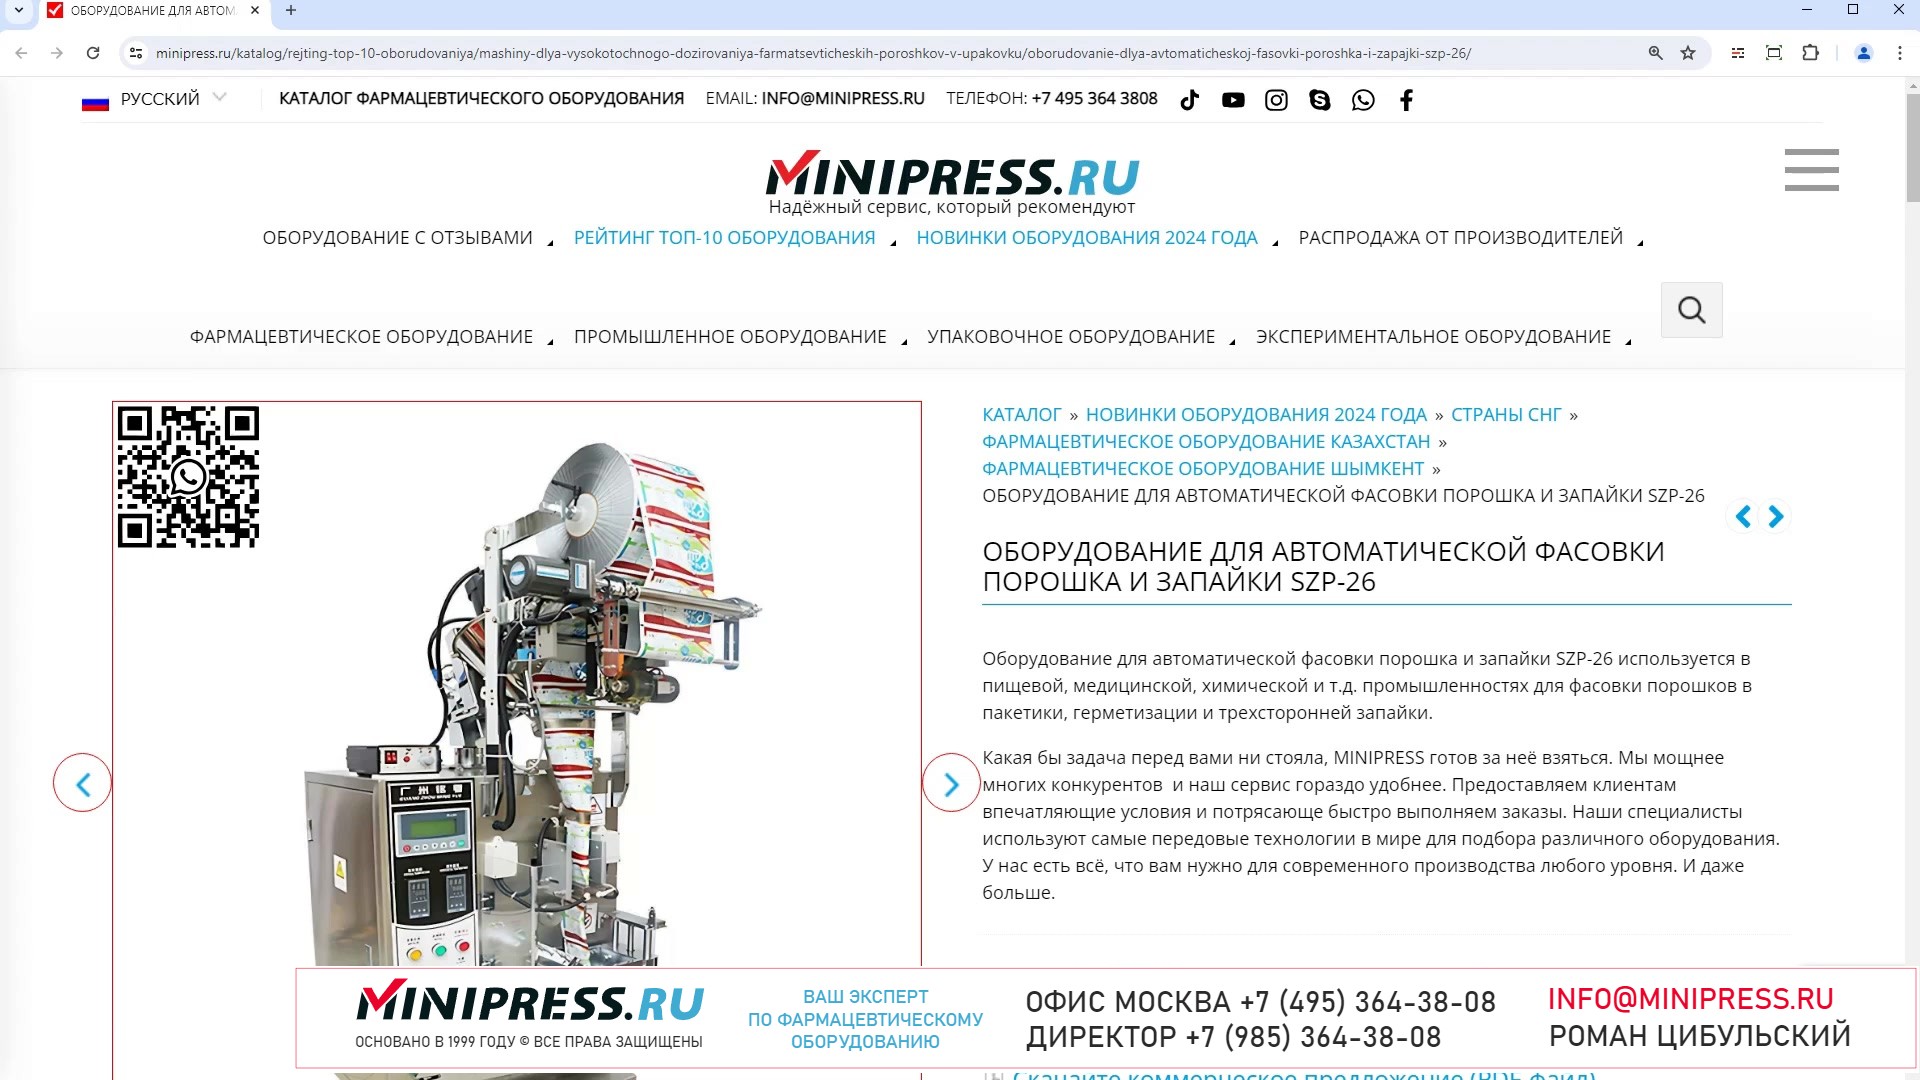 Minipress.ru Оборудование для автоматической фасовки порошка и запайки SZP-26